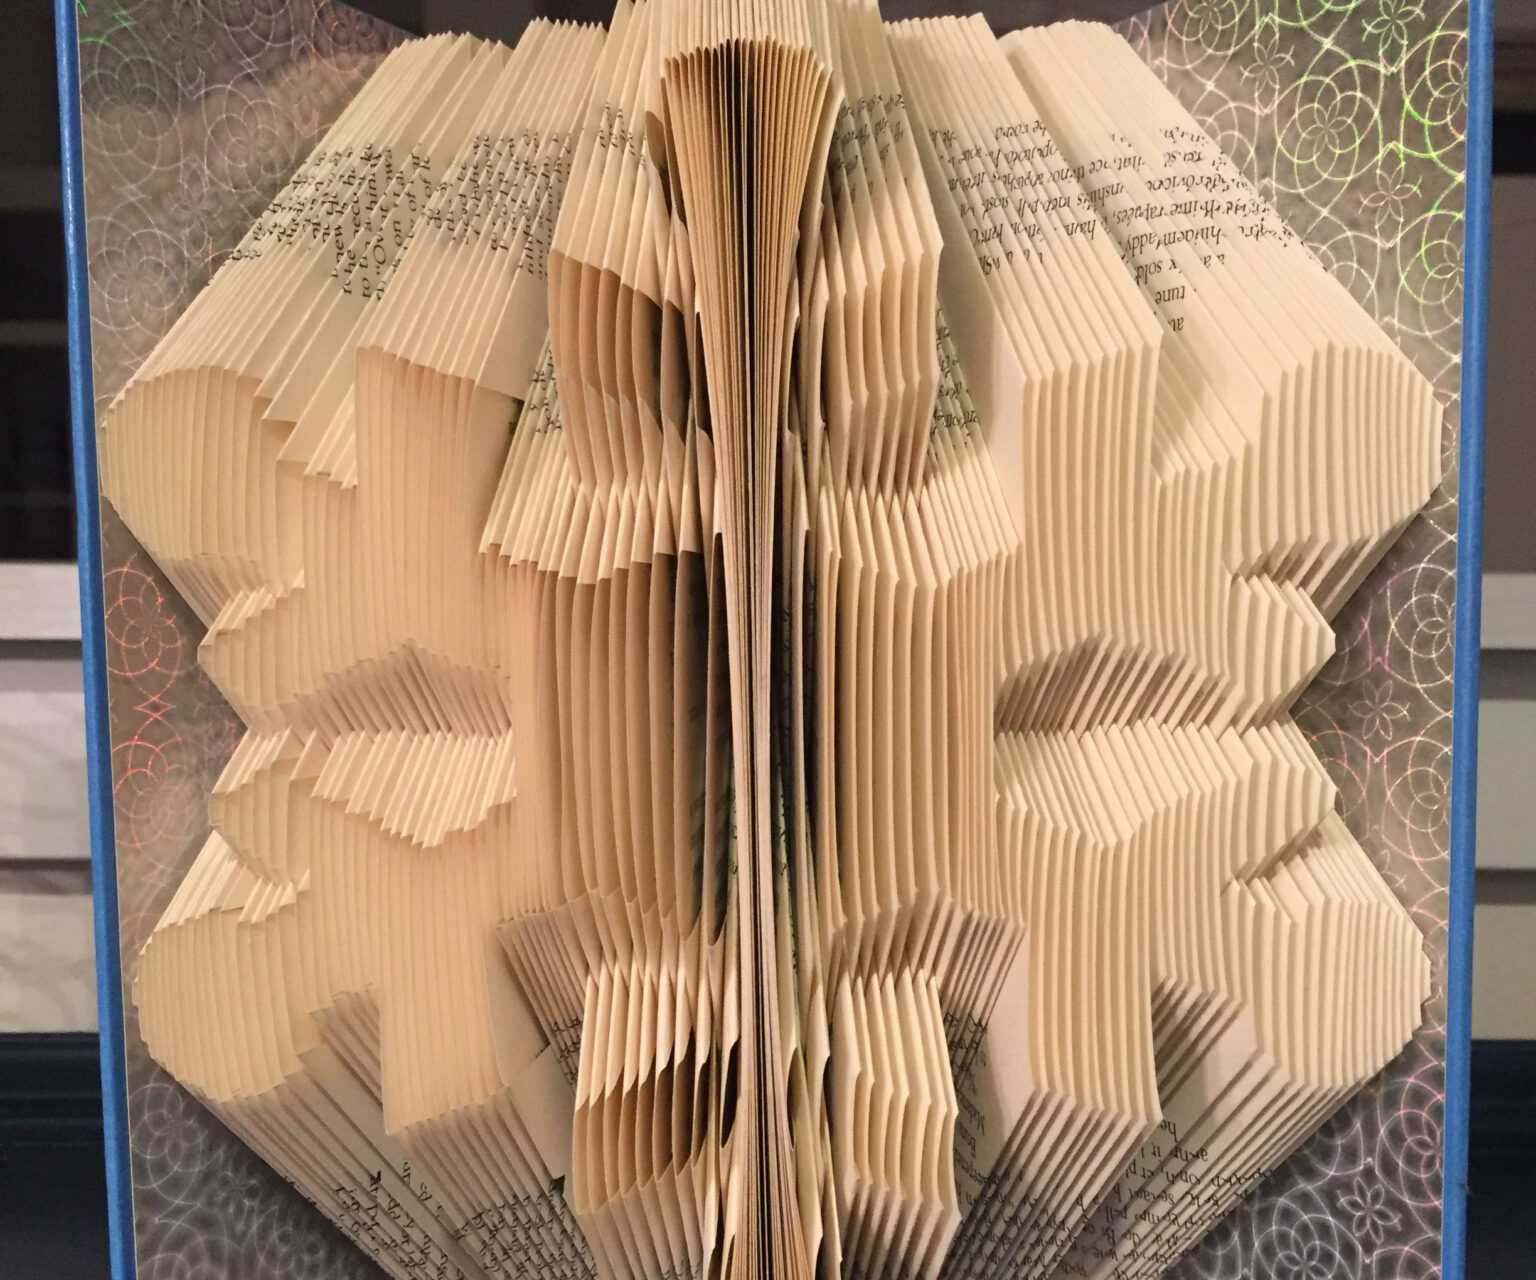 snowflake-book-folding-pattern-book-art-tutorial-using-throughout